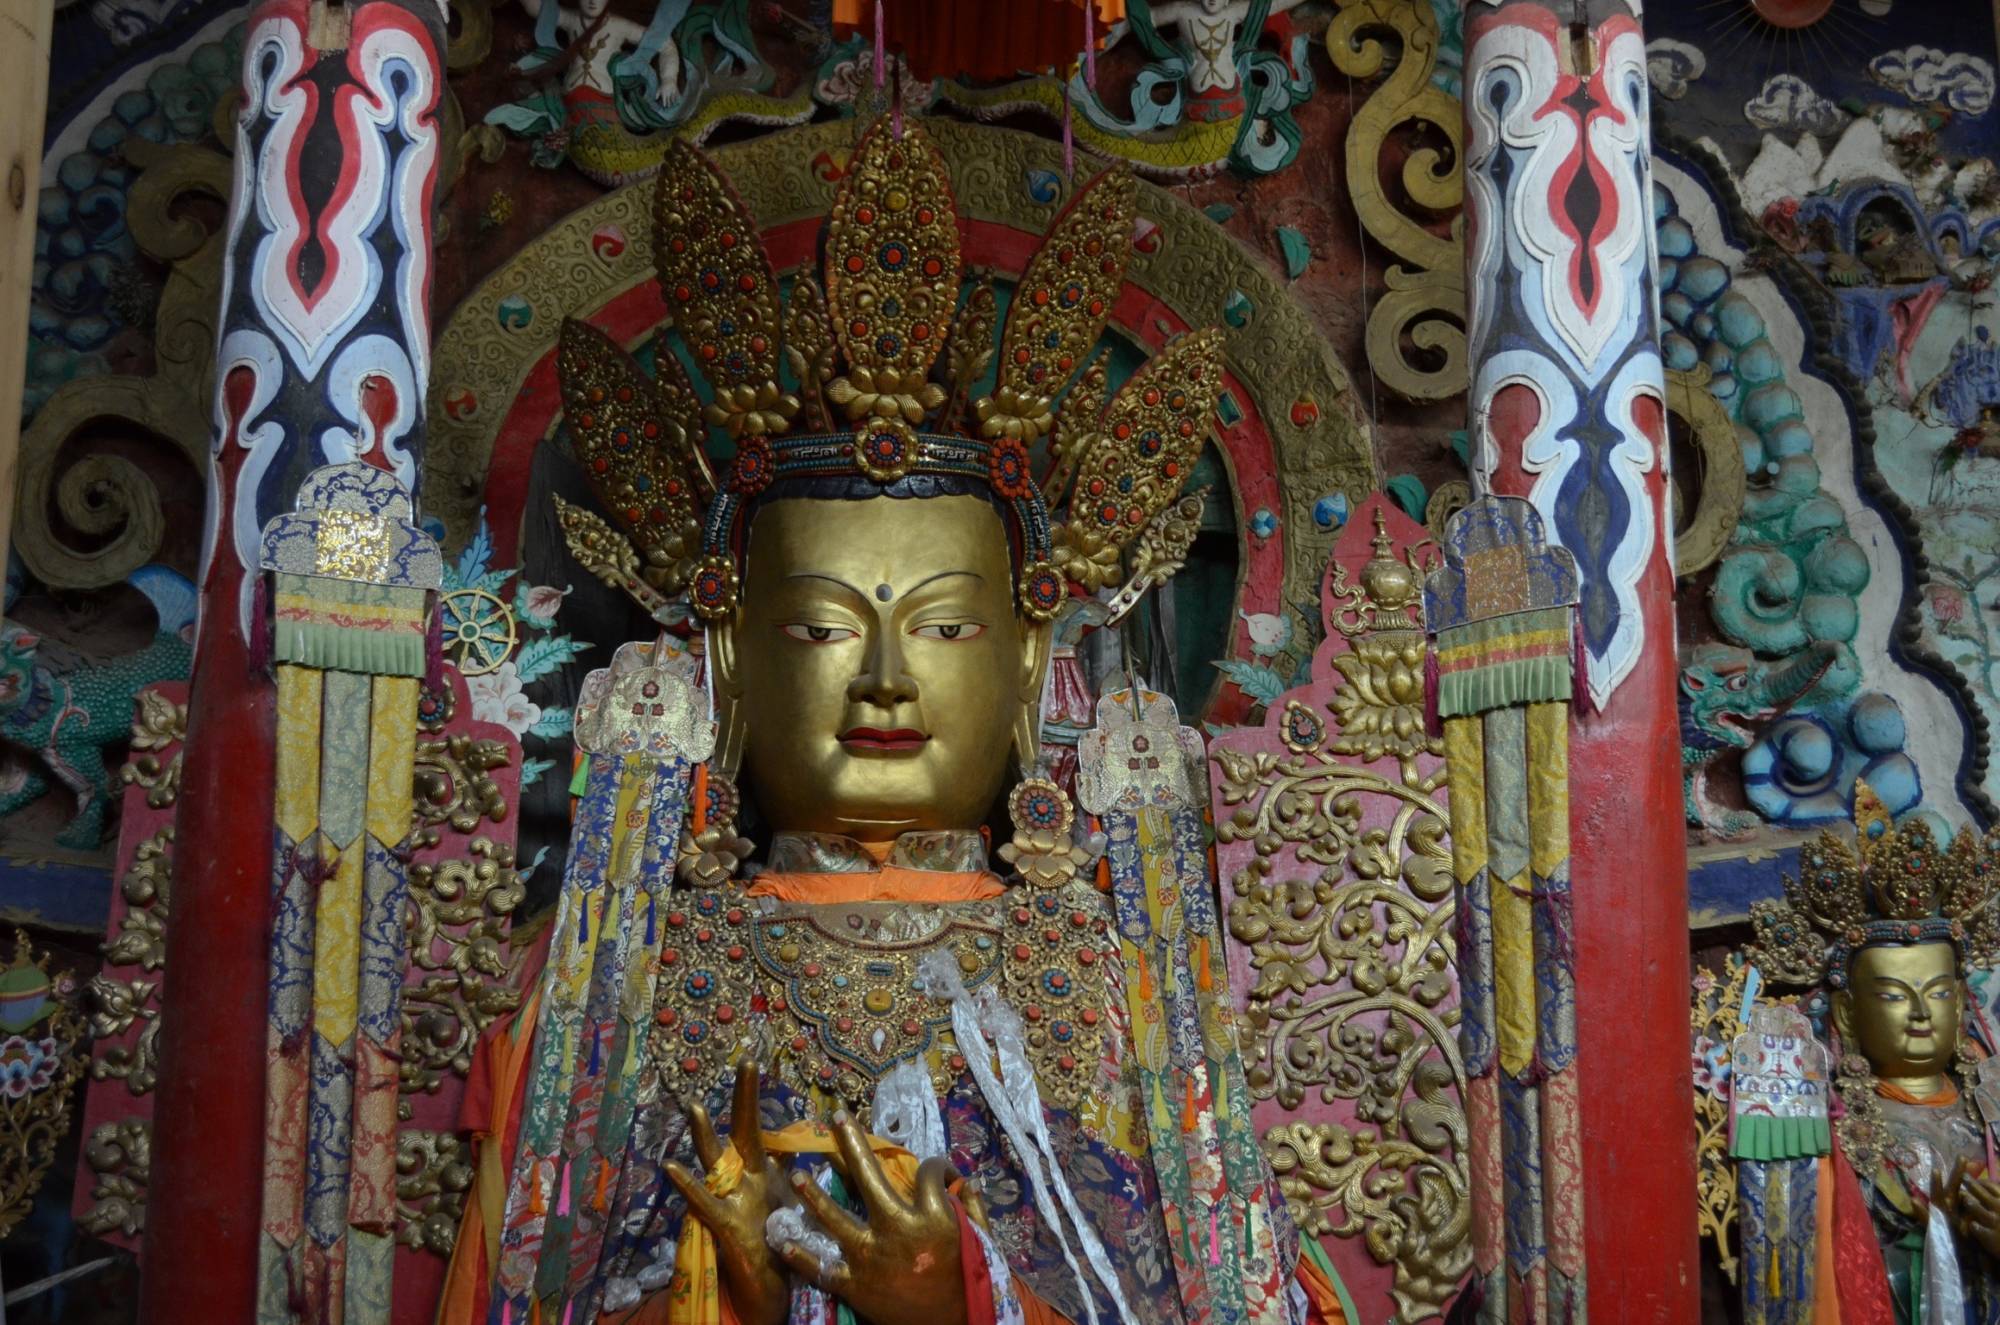 苗族民族衣装、チベット仏教美術、ジービーズ( 天珠）、ミャオ族刺繍